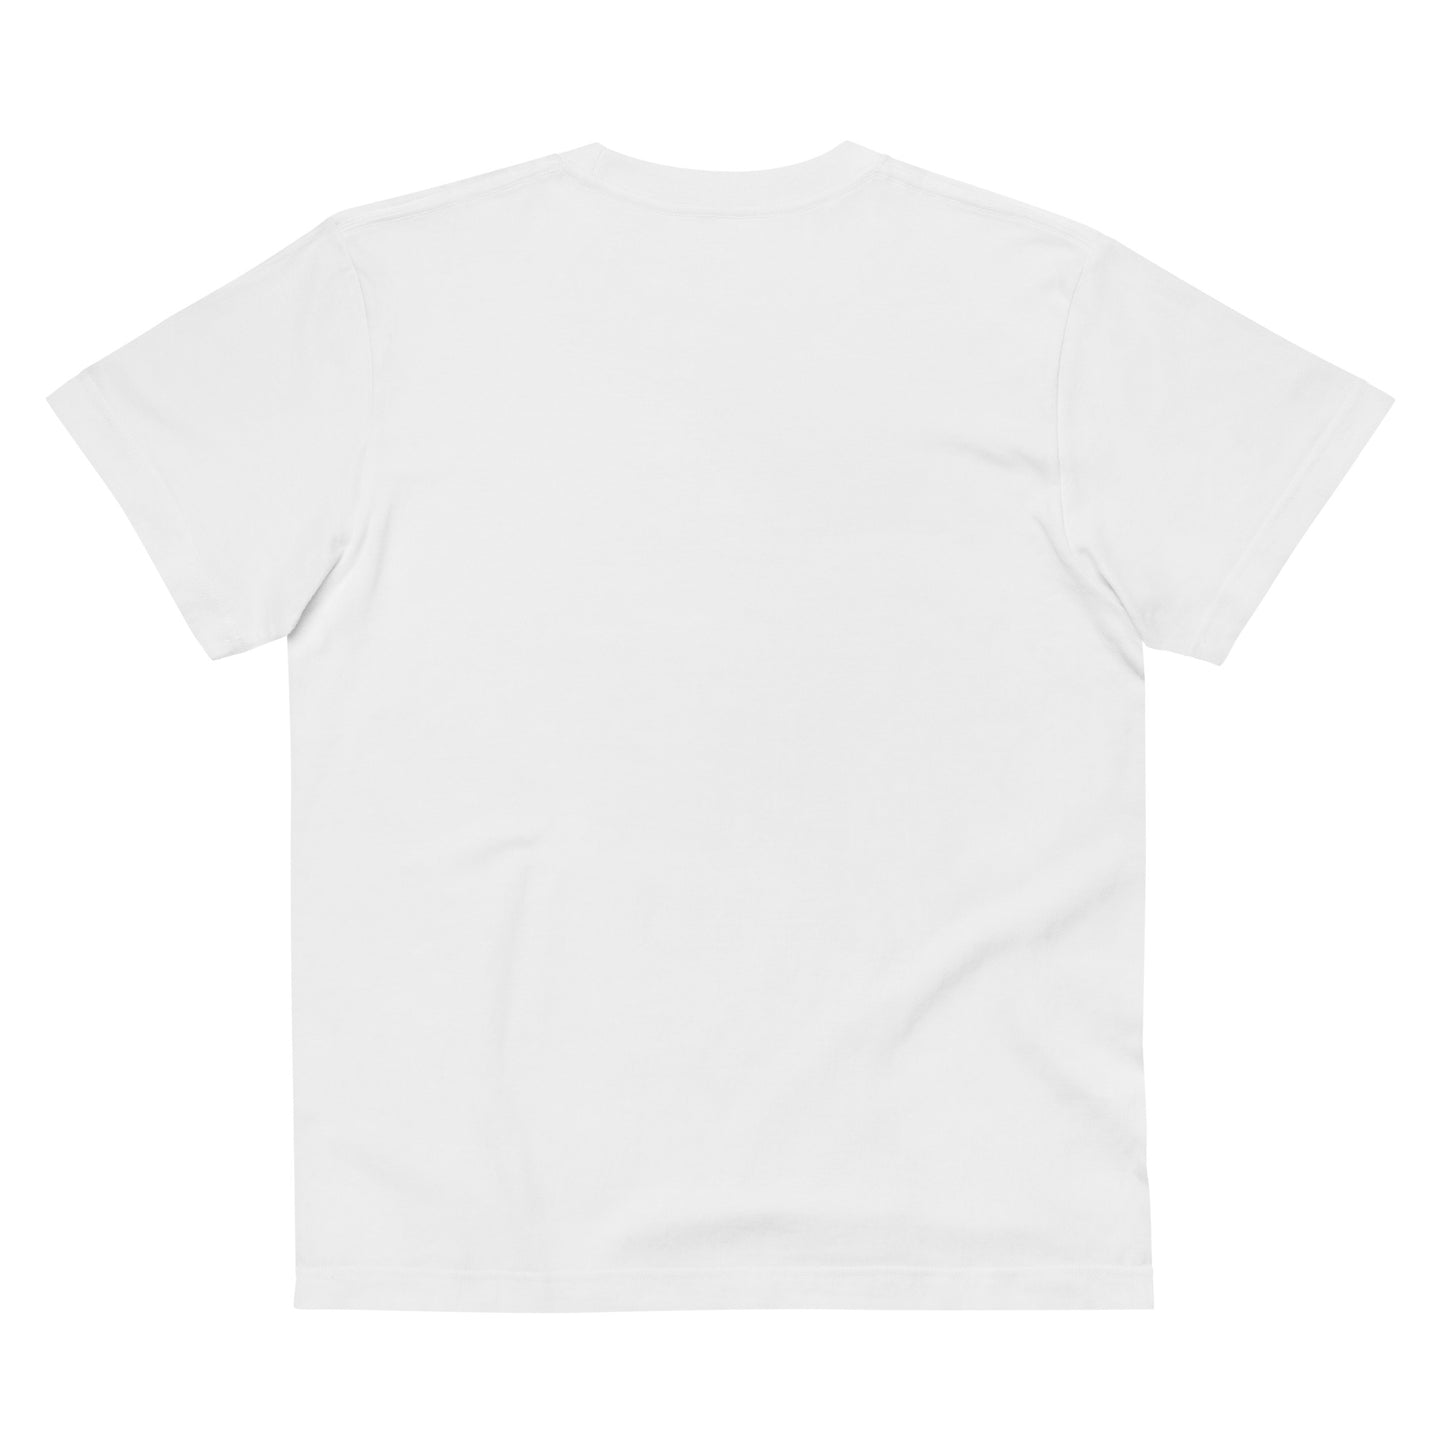 P010 - เสื้อยืดคอตตอนคุณภาพ (เตรียมตัว! : สีขาว/สีดำ)